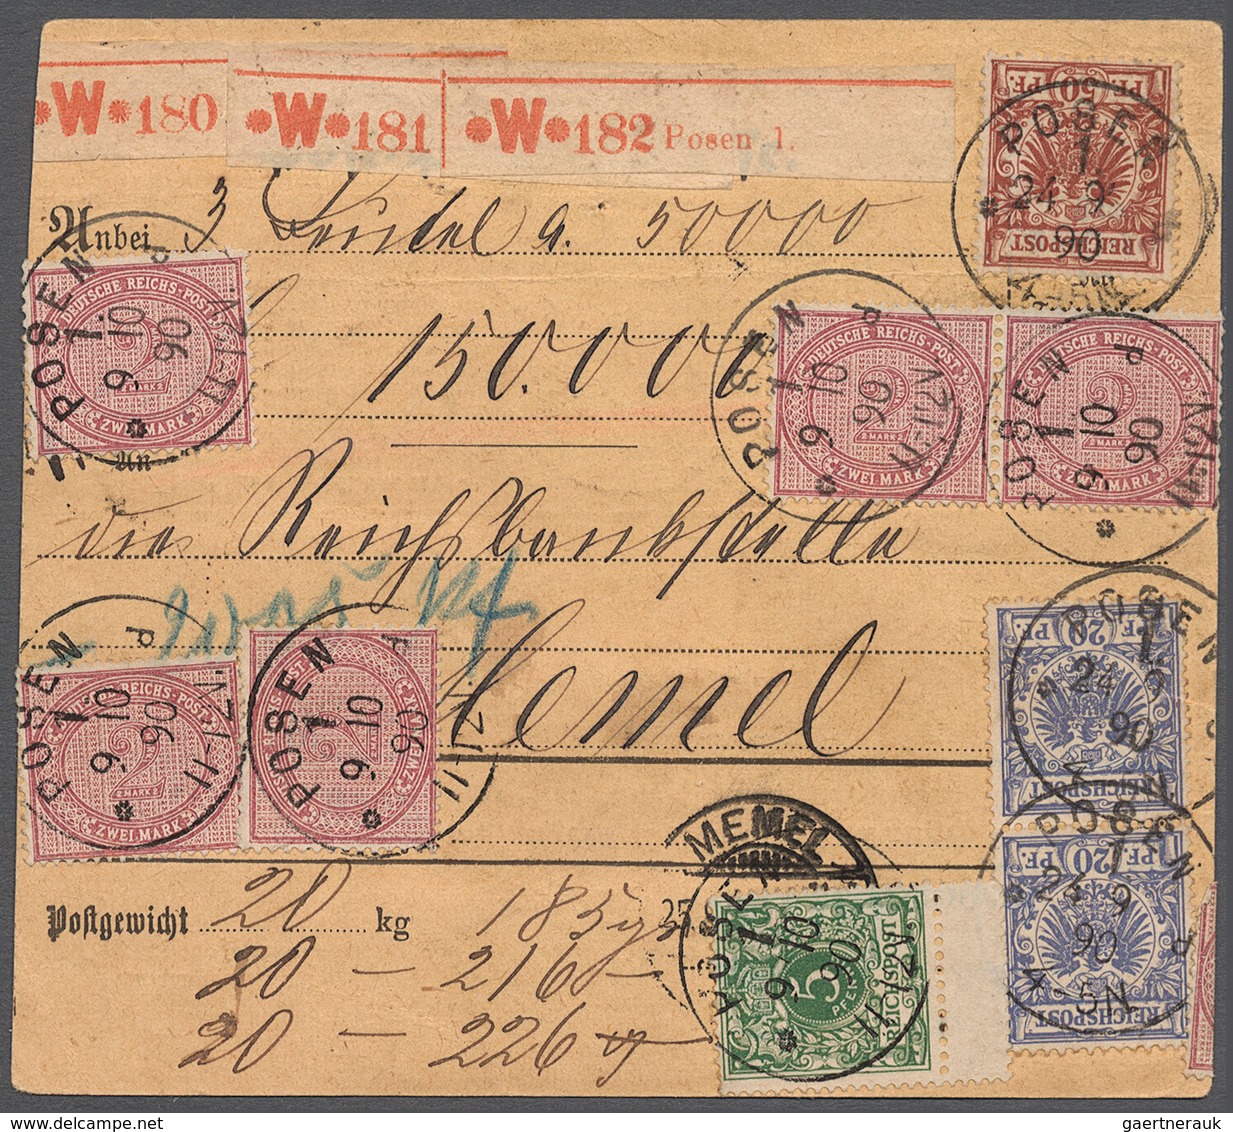 Deutsches Reich - Pfennige: 1890, Stammteil Einer Paketkarte Für Drei Pakete Mit Wertangabe 150.0000 - Briefe U. Dokumente